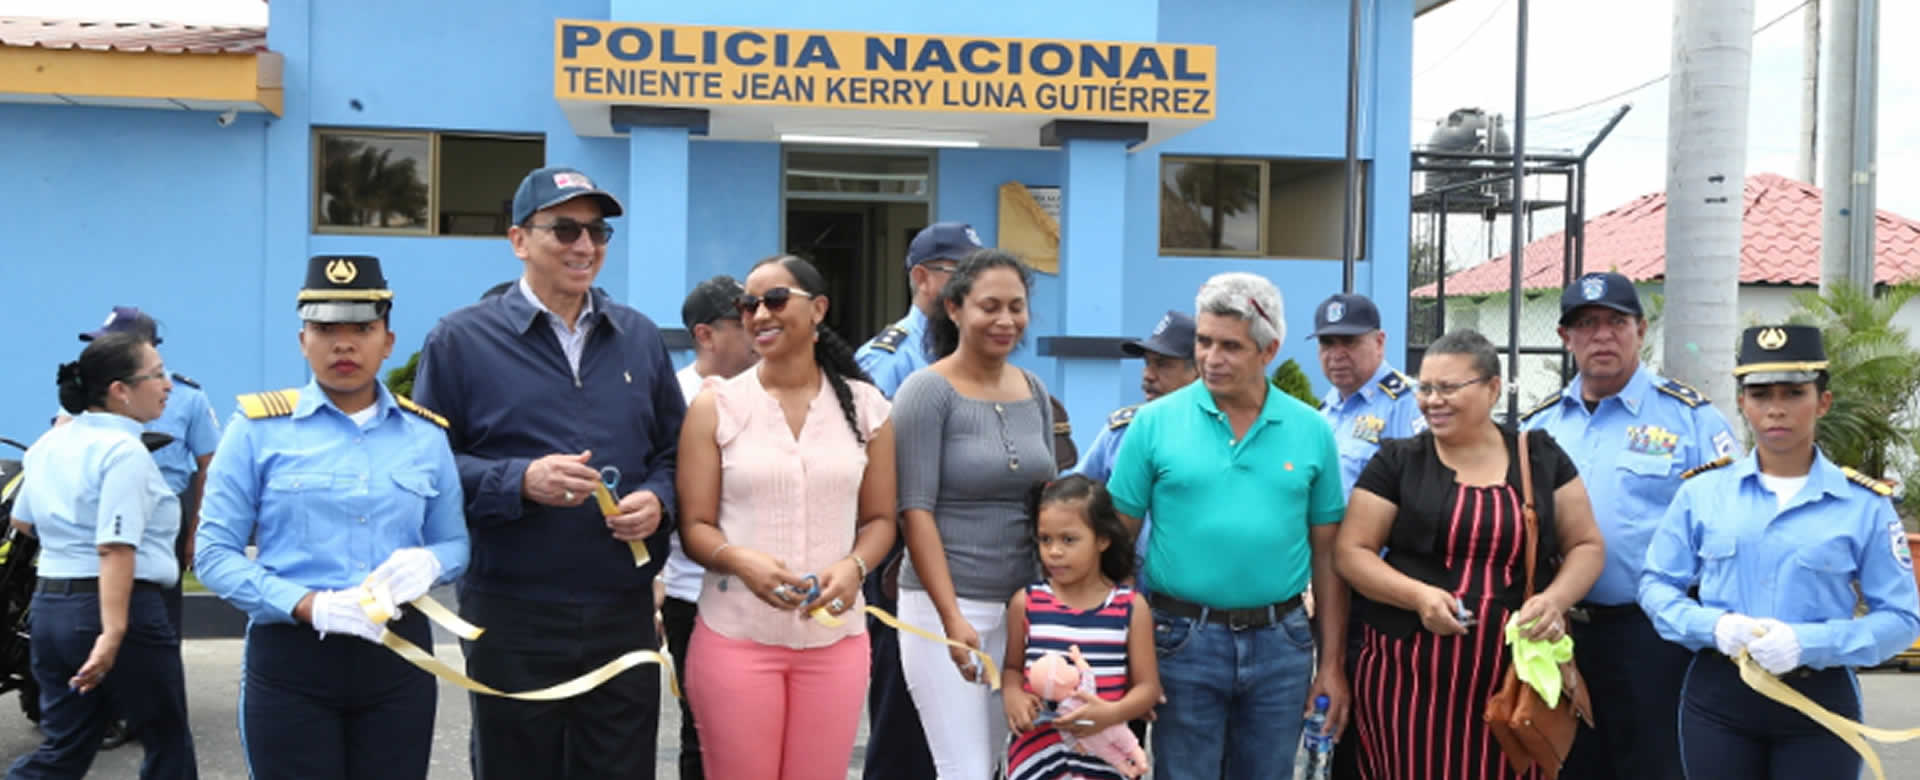 Inauguran unidad policial en el Puerto Salvador Allende